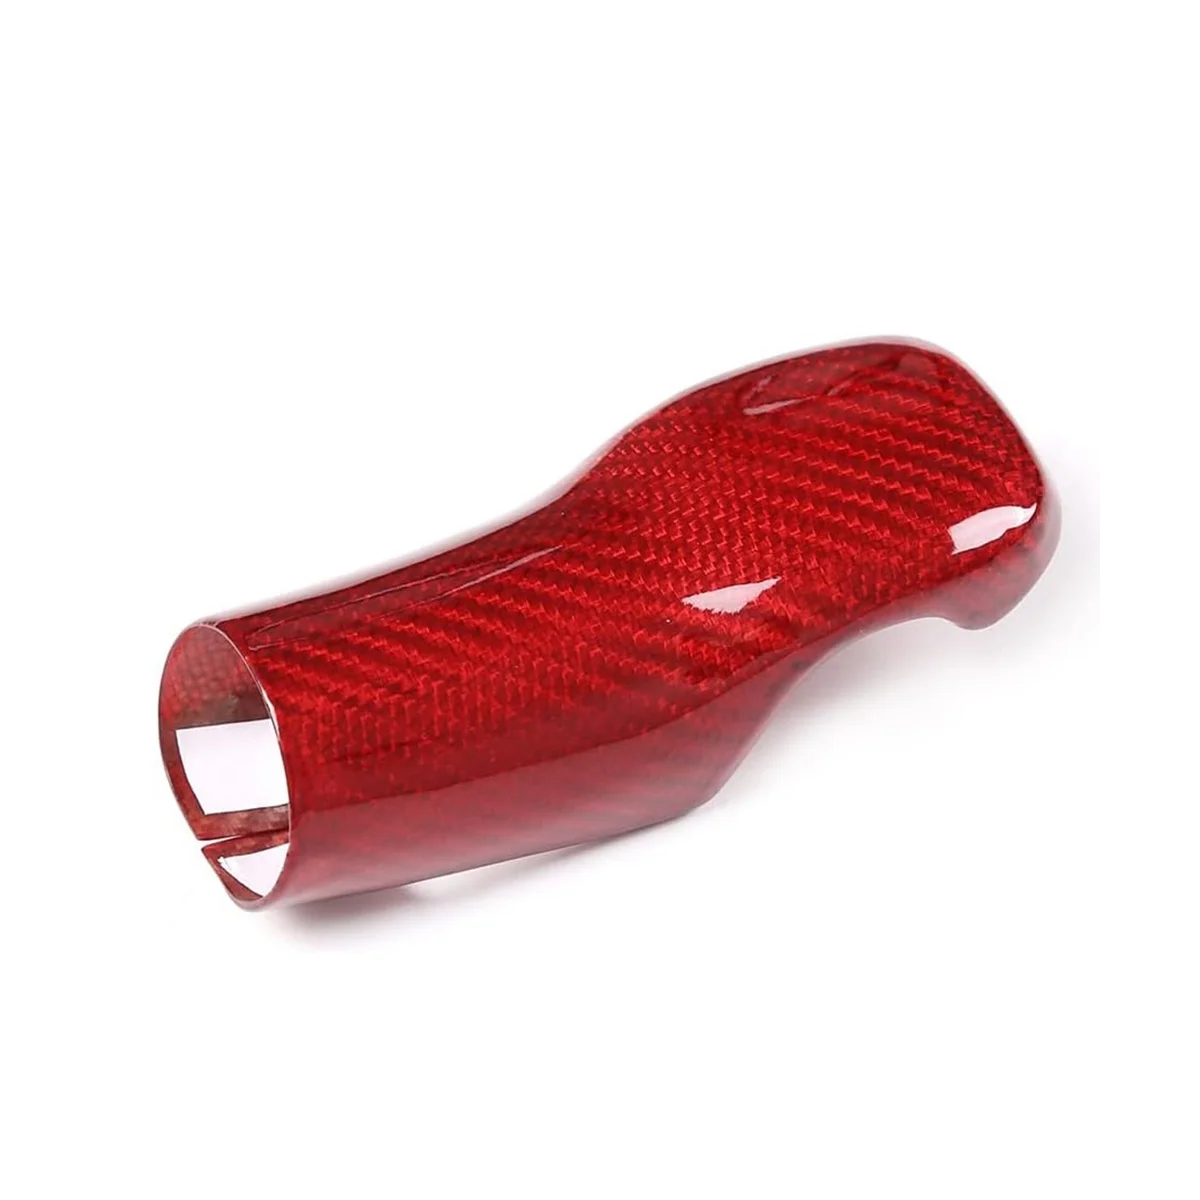 Для A90 A91 MK5 2019-2022, защитная задняя крышка головки переключения передач автомобиля из сухого углеродного волокна, красный цвет из углеродного волокна